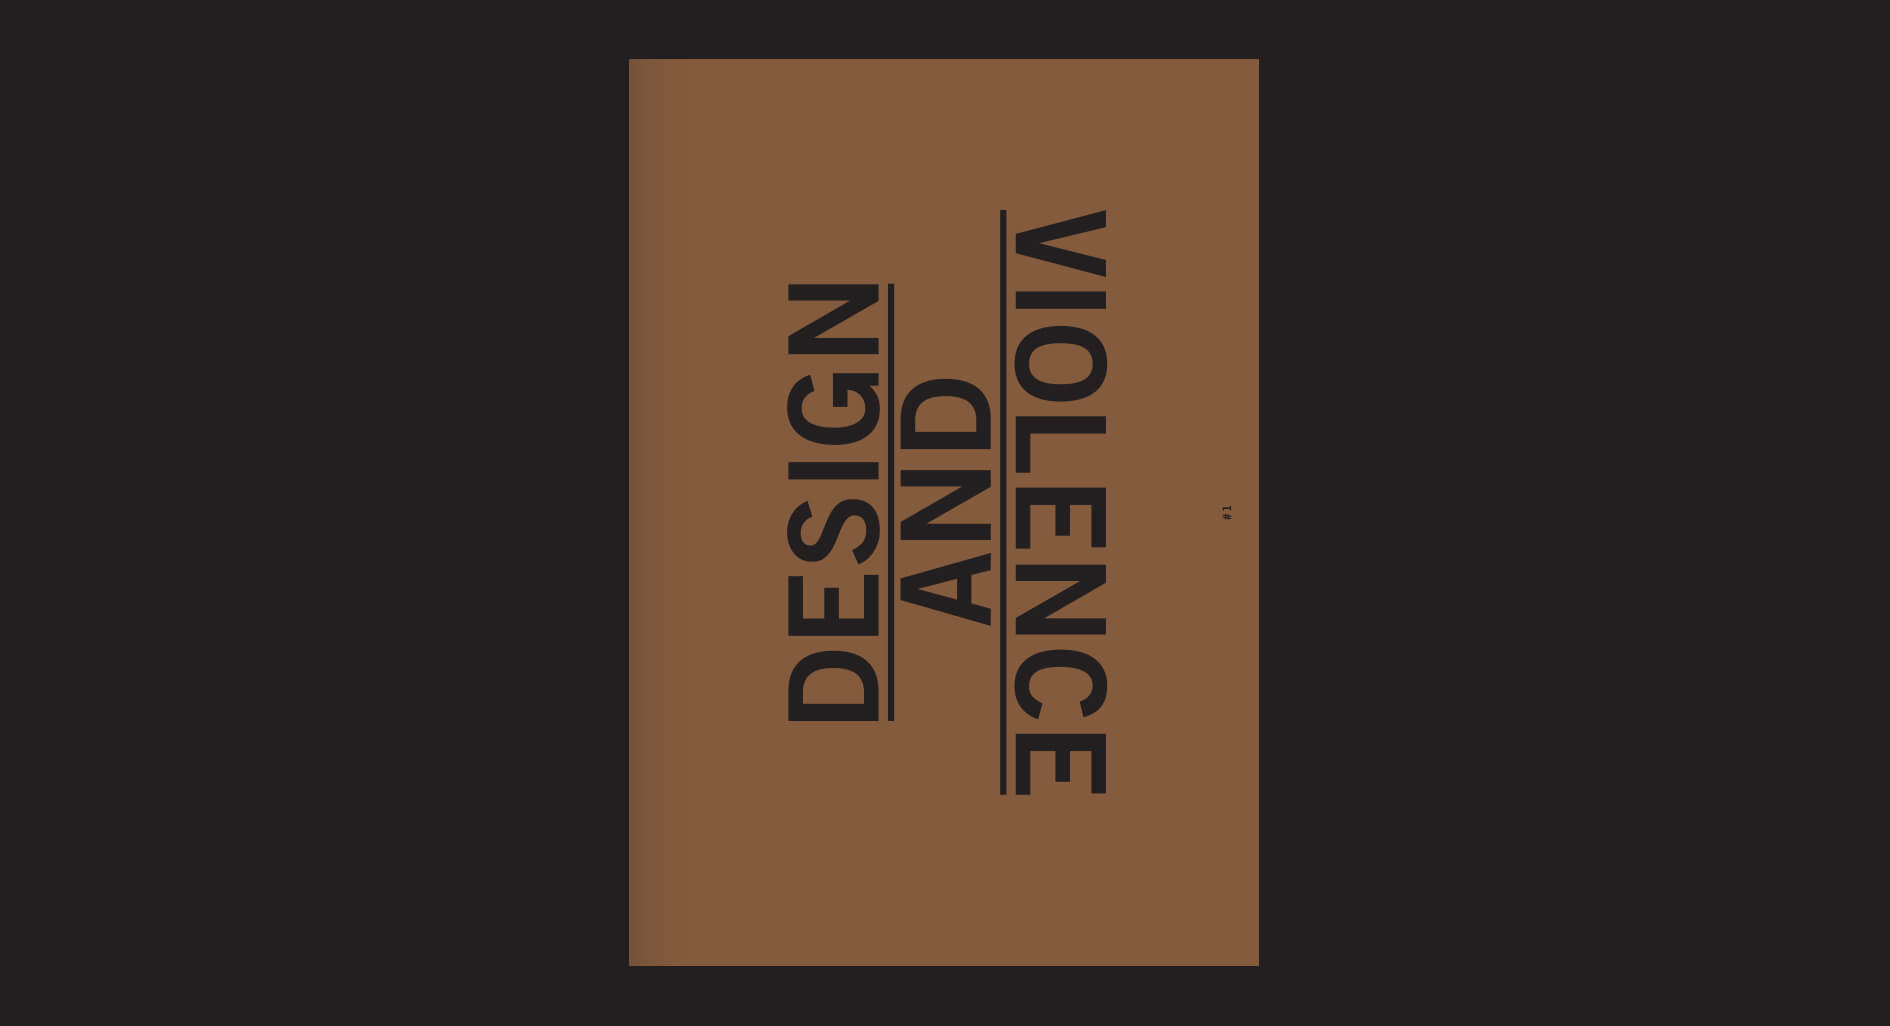 Design+Violence